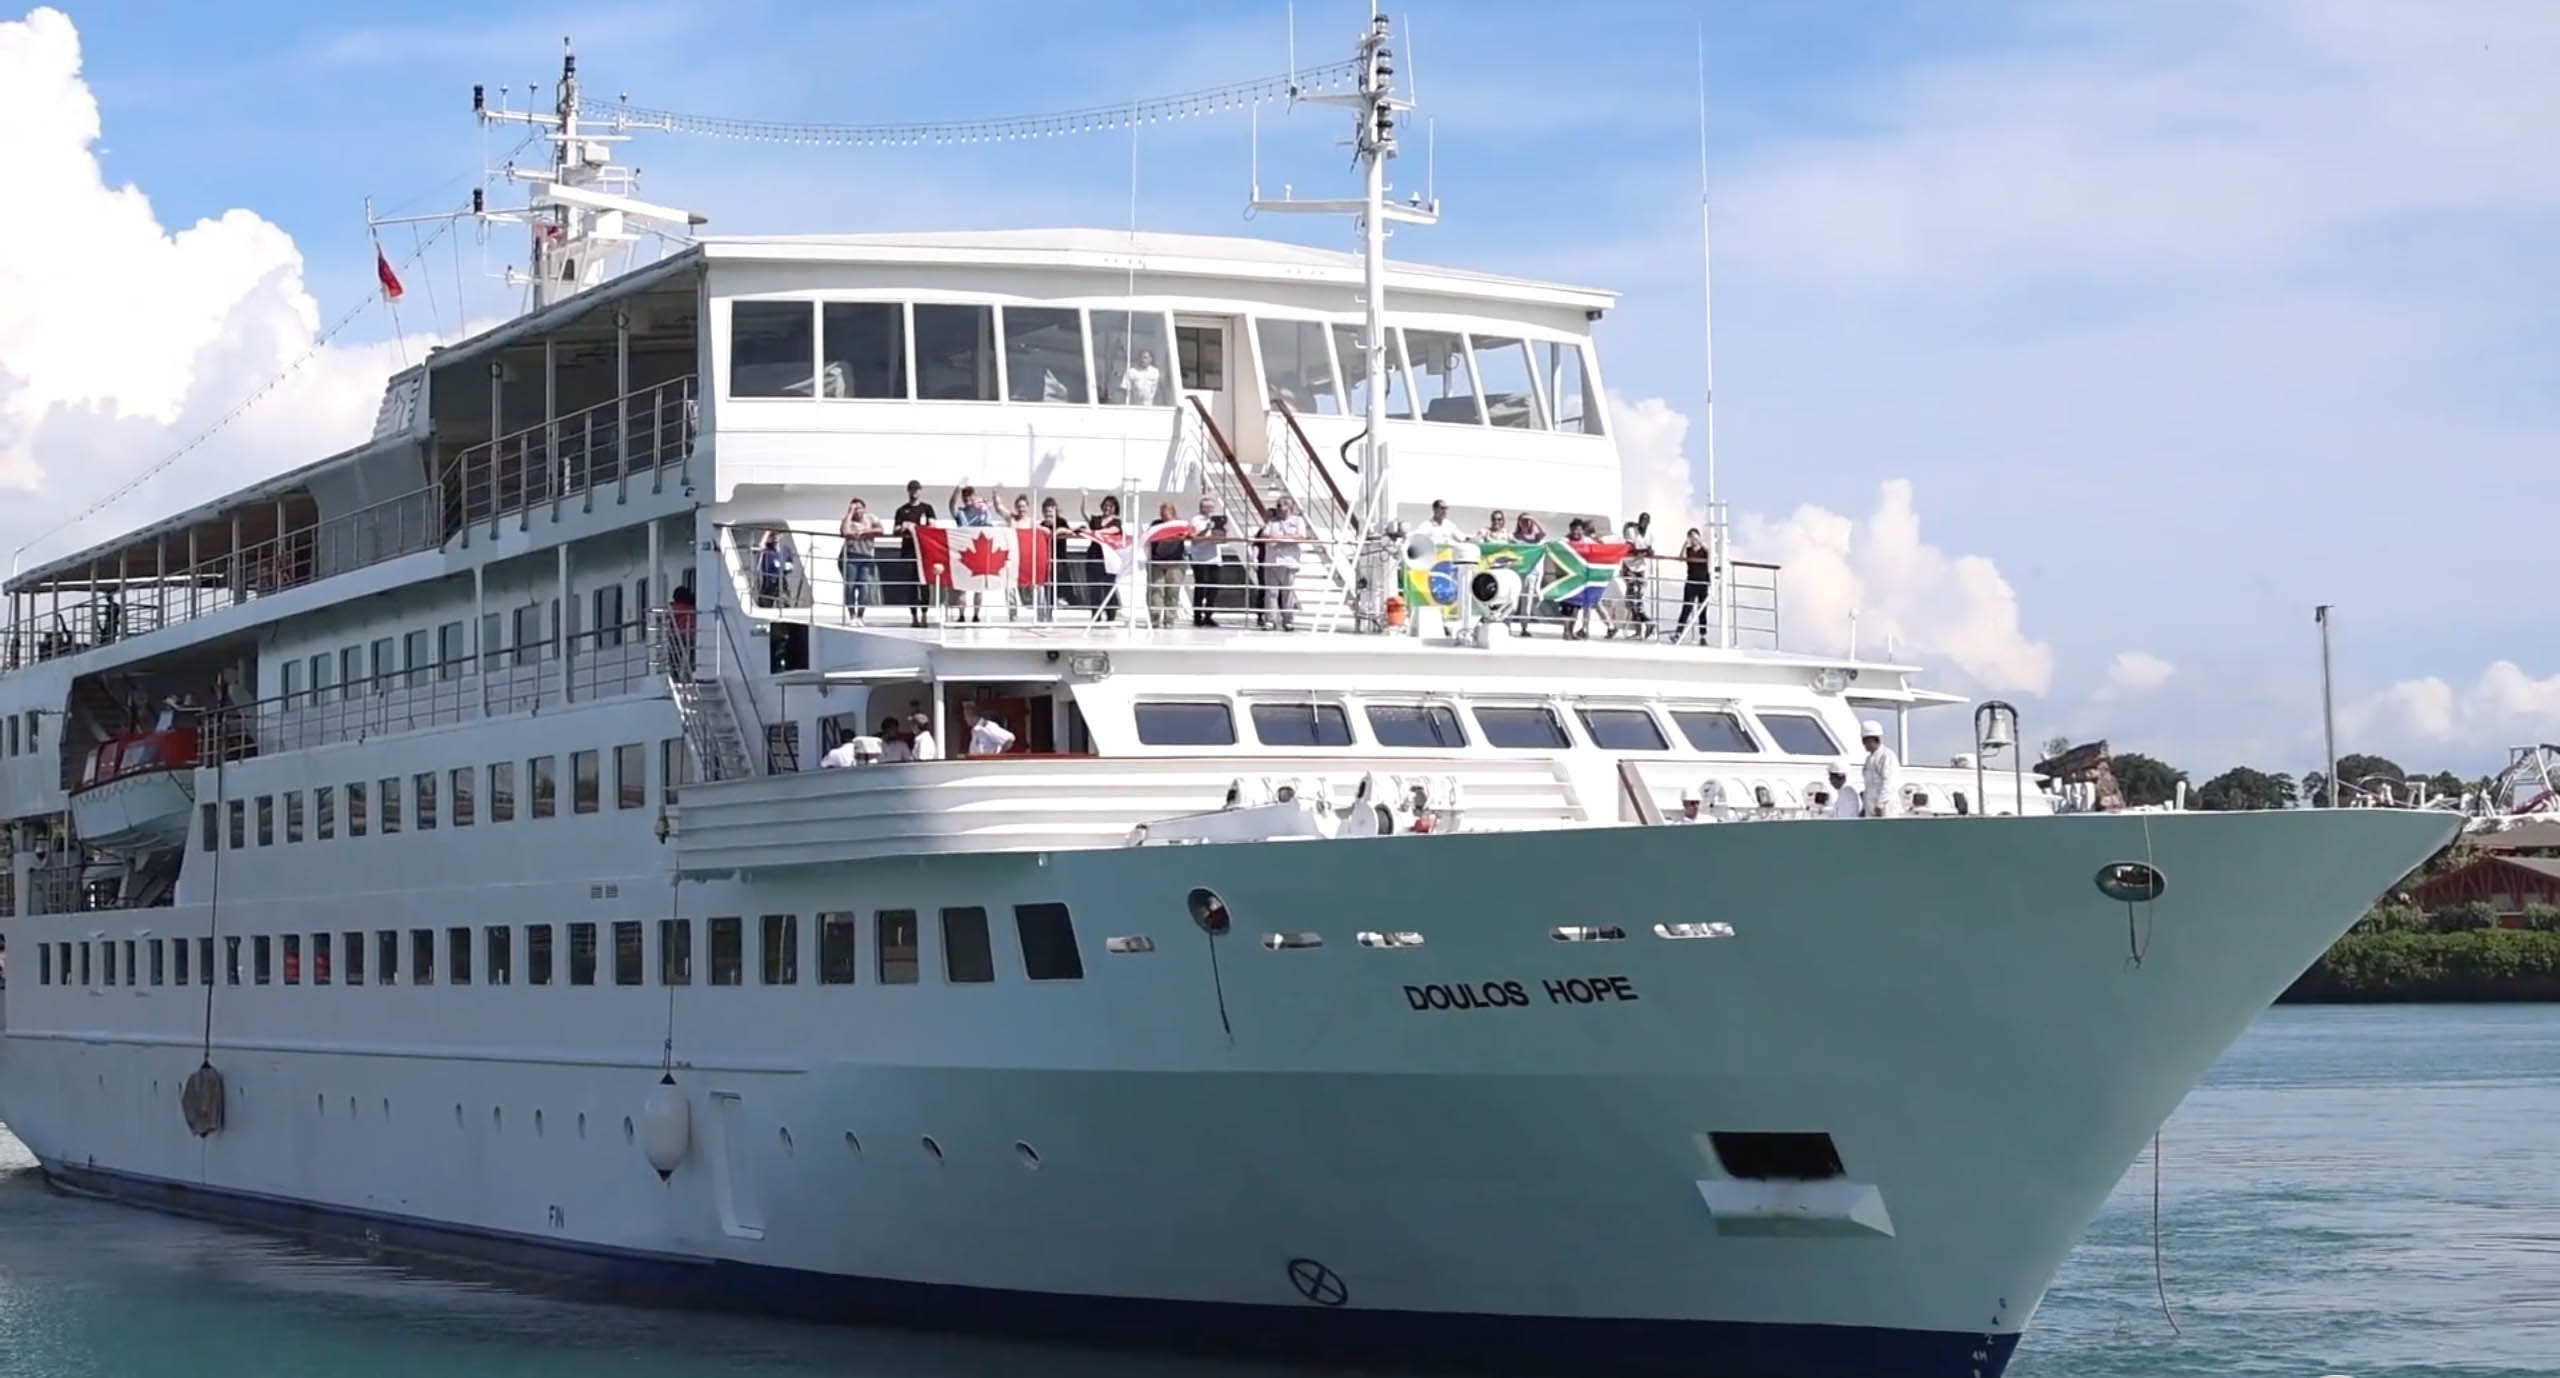 Nuevo barco-librería llega a puertos de Asia con mensaje de esperanza